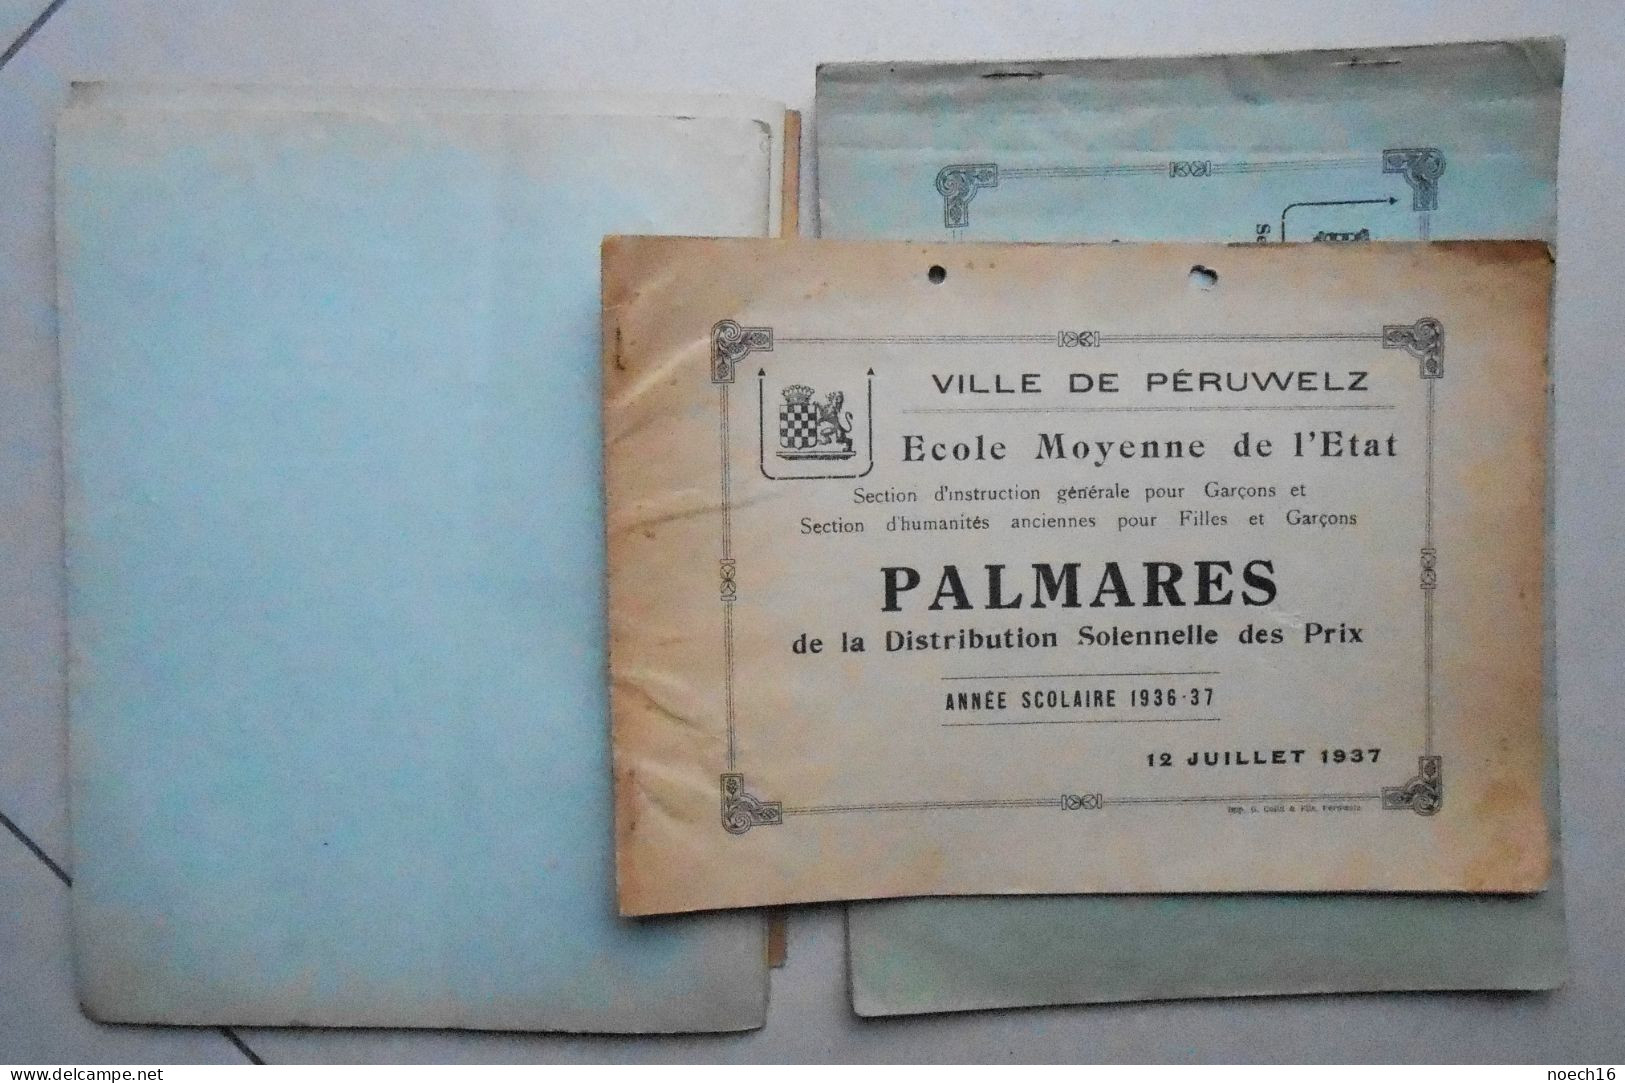 Lot 6 Palmares Et 14 Bulletins. Ville De Péruwelz. Ecole Moyenne De L'Etat - Diploma & School Reports